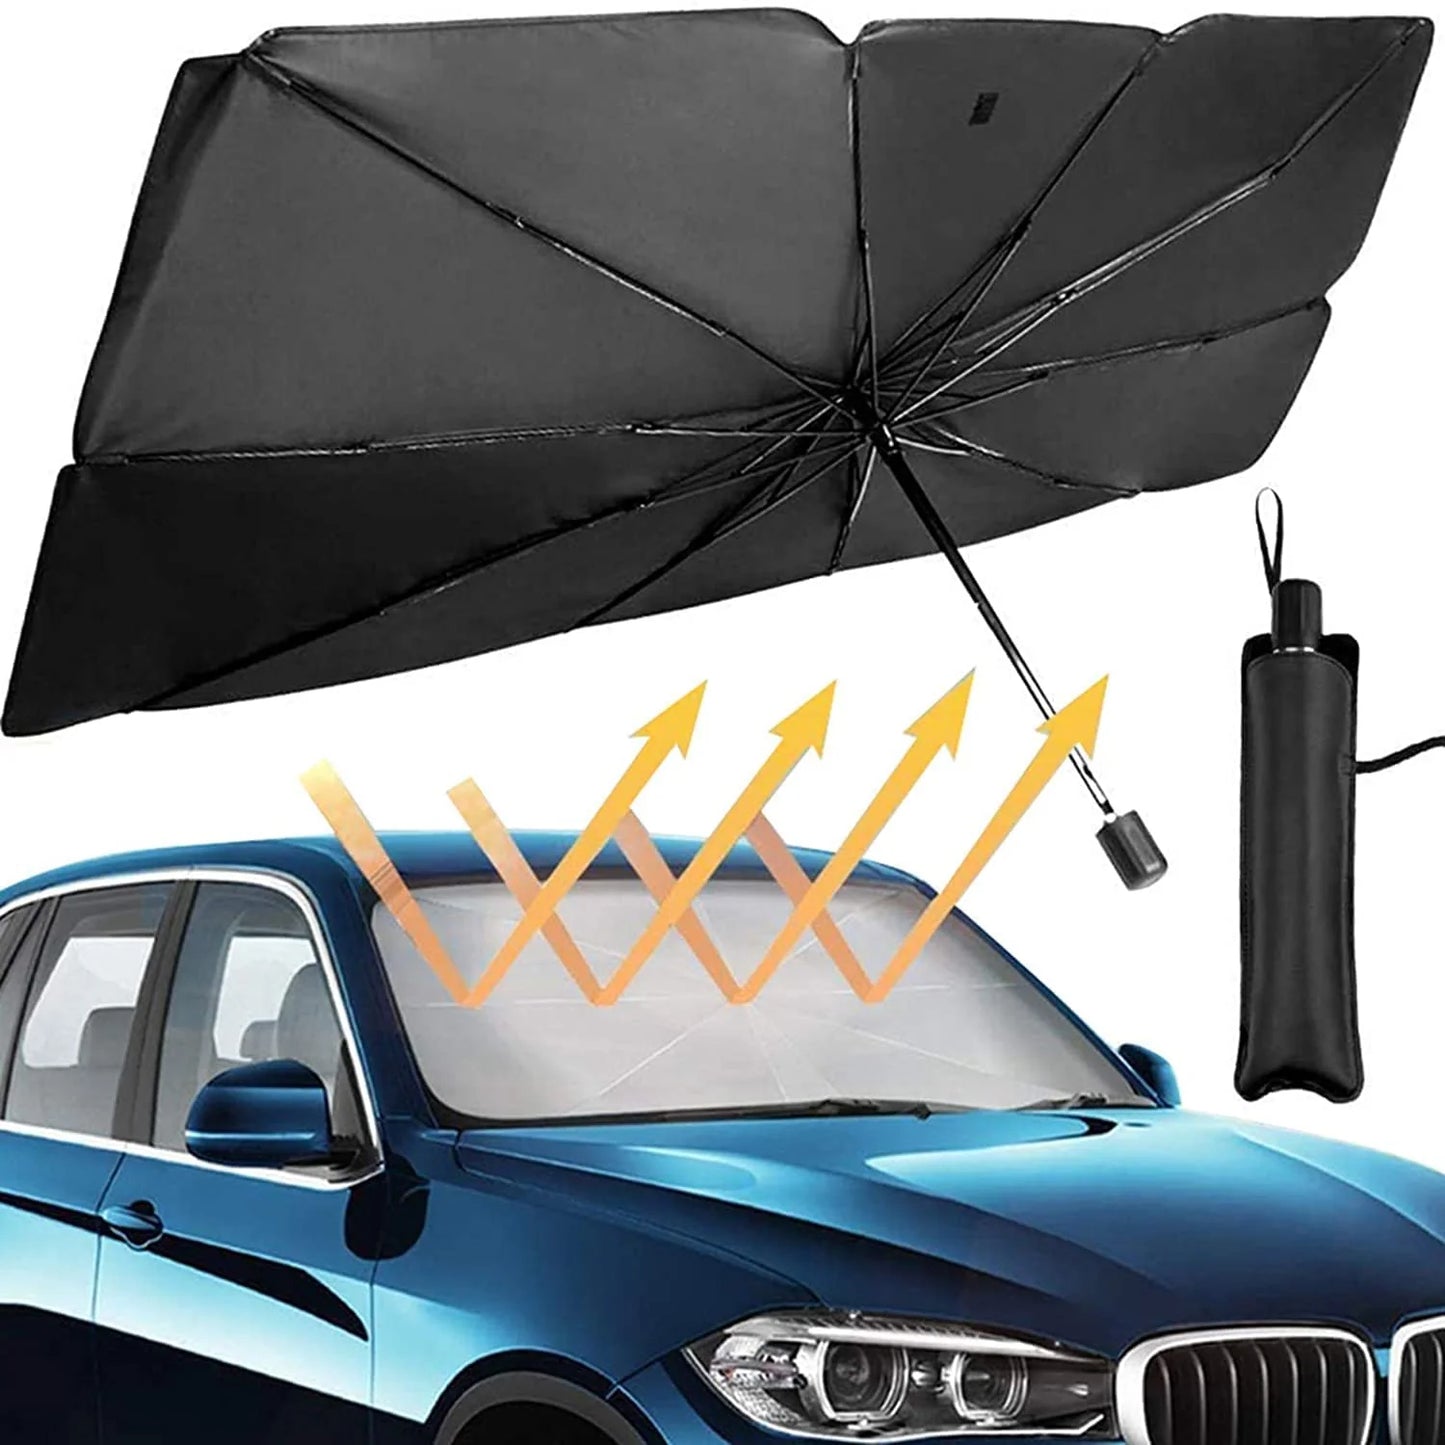 Πτυσσόμενο σκίαστρο τύπου ομπρέλας για το παρμπρίζ του αυτοκινήτου